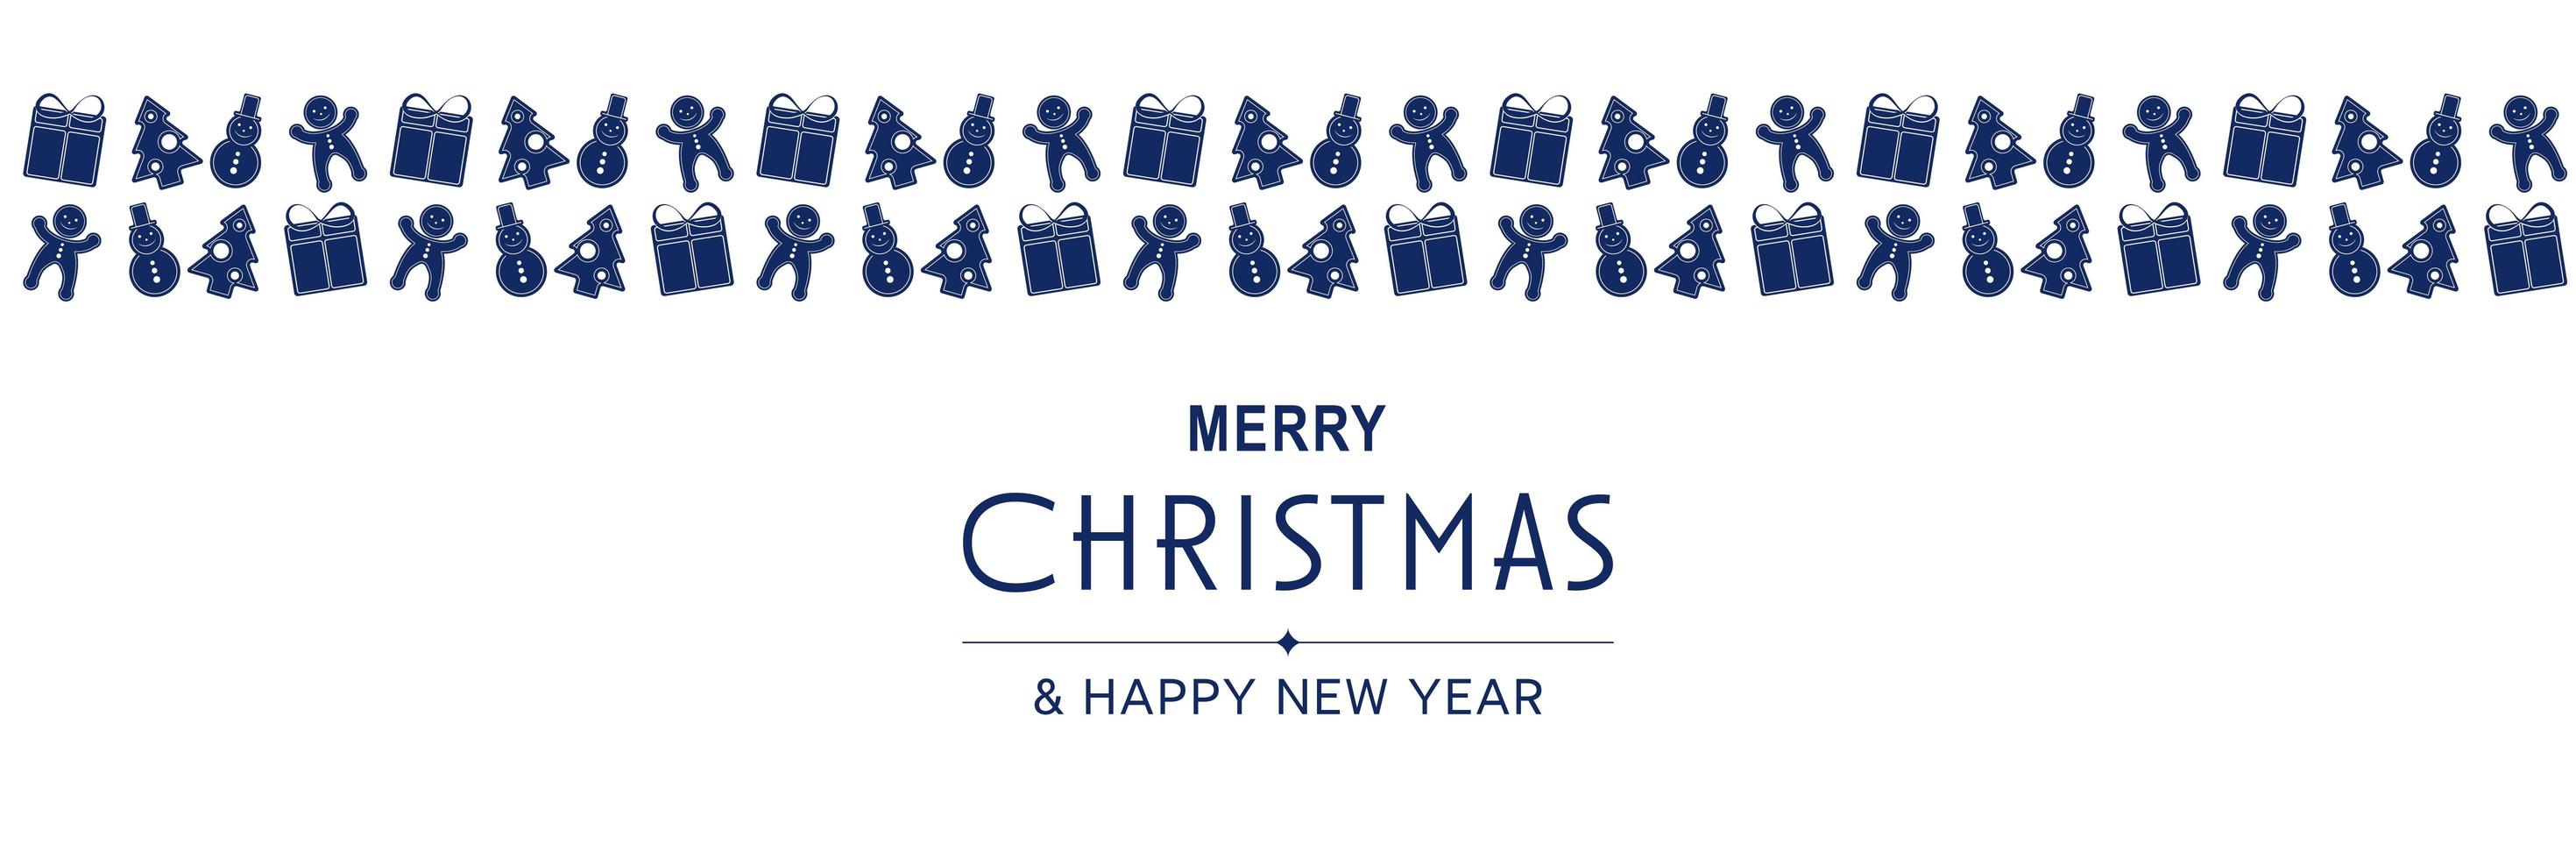 affiche de joyeux noël et nouvel an 2022. bannière minimale de Noël avec motif bleu avec bonhommes de neige, arbres, cadeaux, pains d'épice et texte sur fond blanc. illustration vectorielle pour la conception de cartes de voeux vecteur